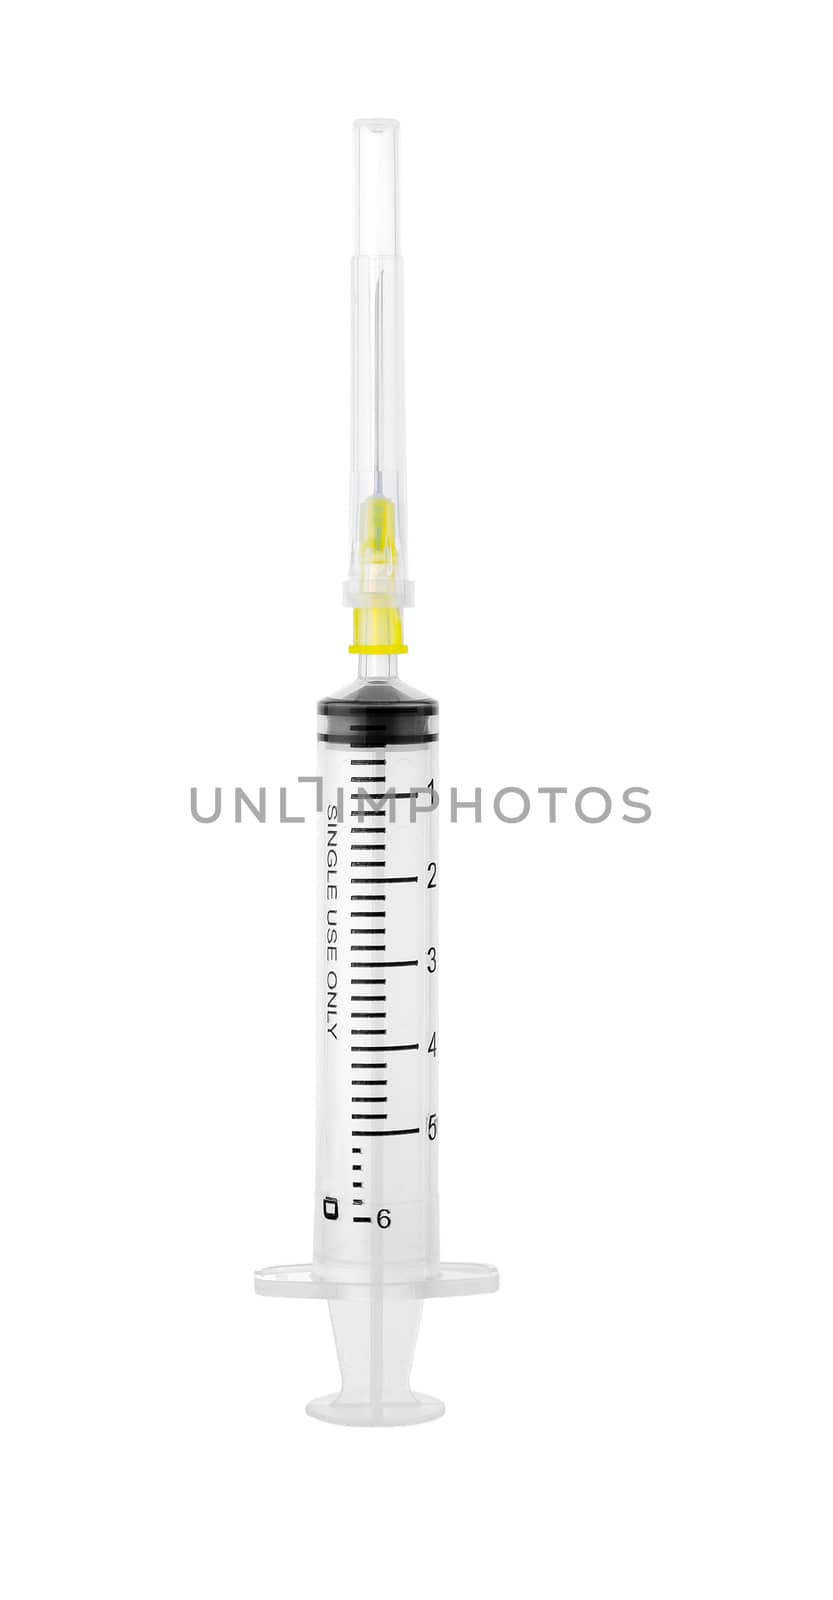  plastic syringe isolated on white background by sommai